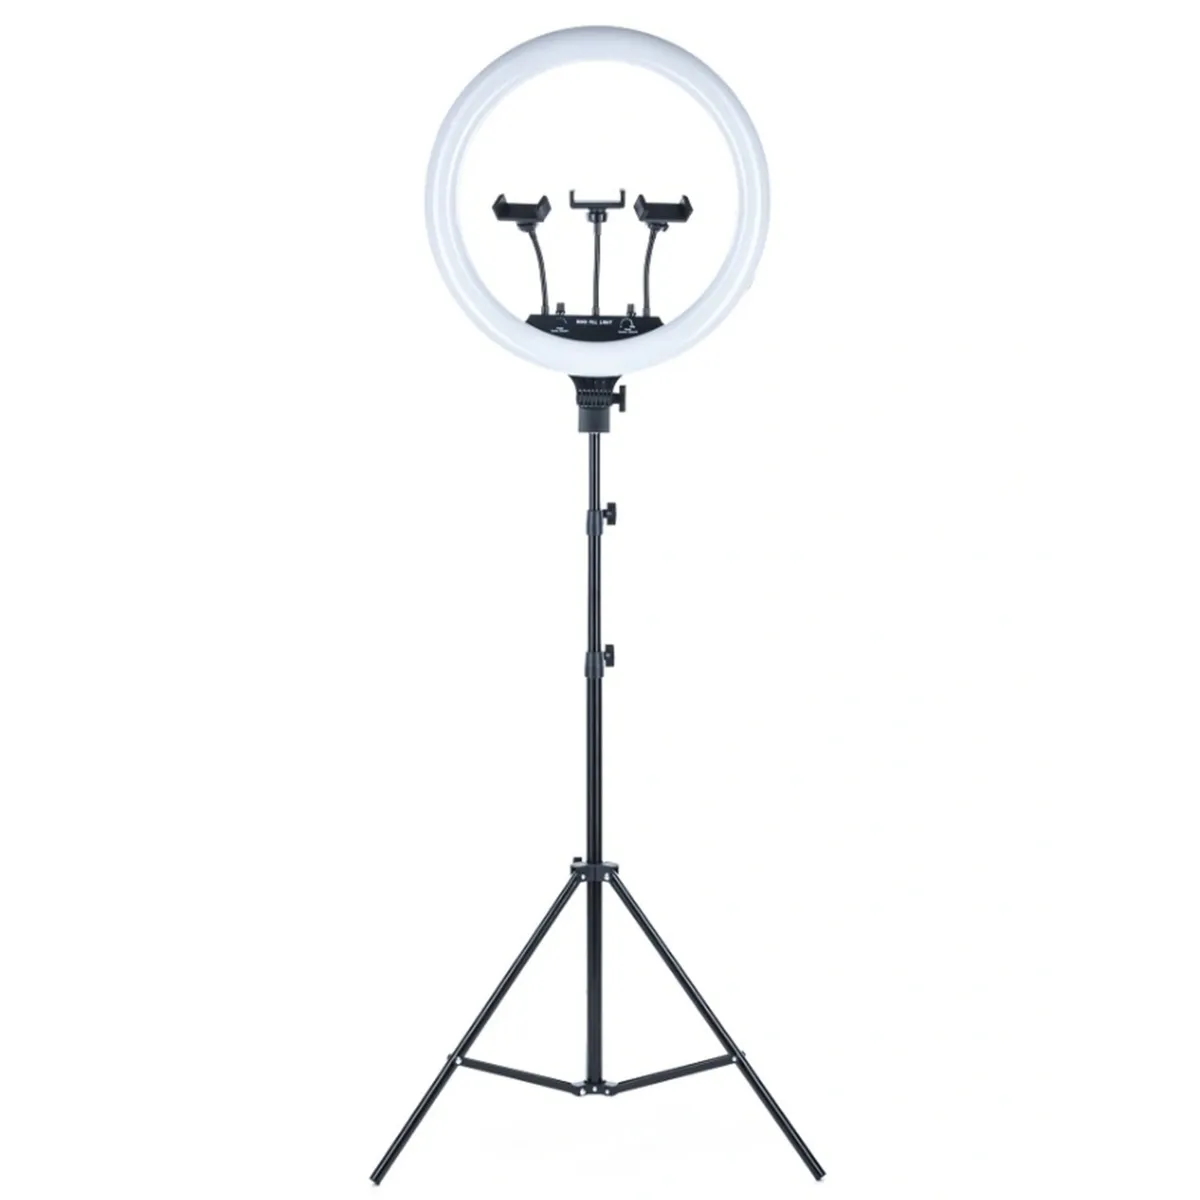 фото Кольцевая селфи led светодиодная лампа mj-18 (45 см), 3 держателя пульт, штатив 210 см qvatra